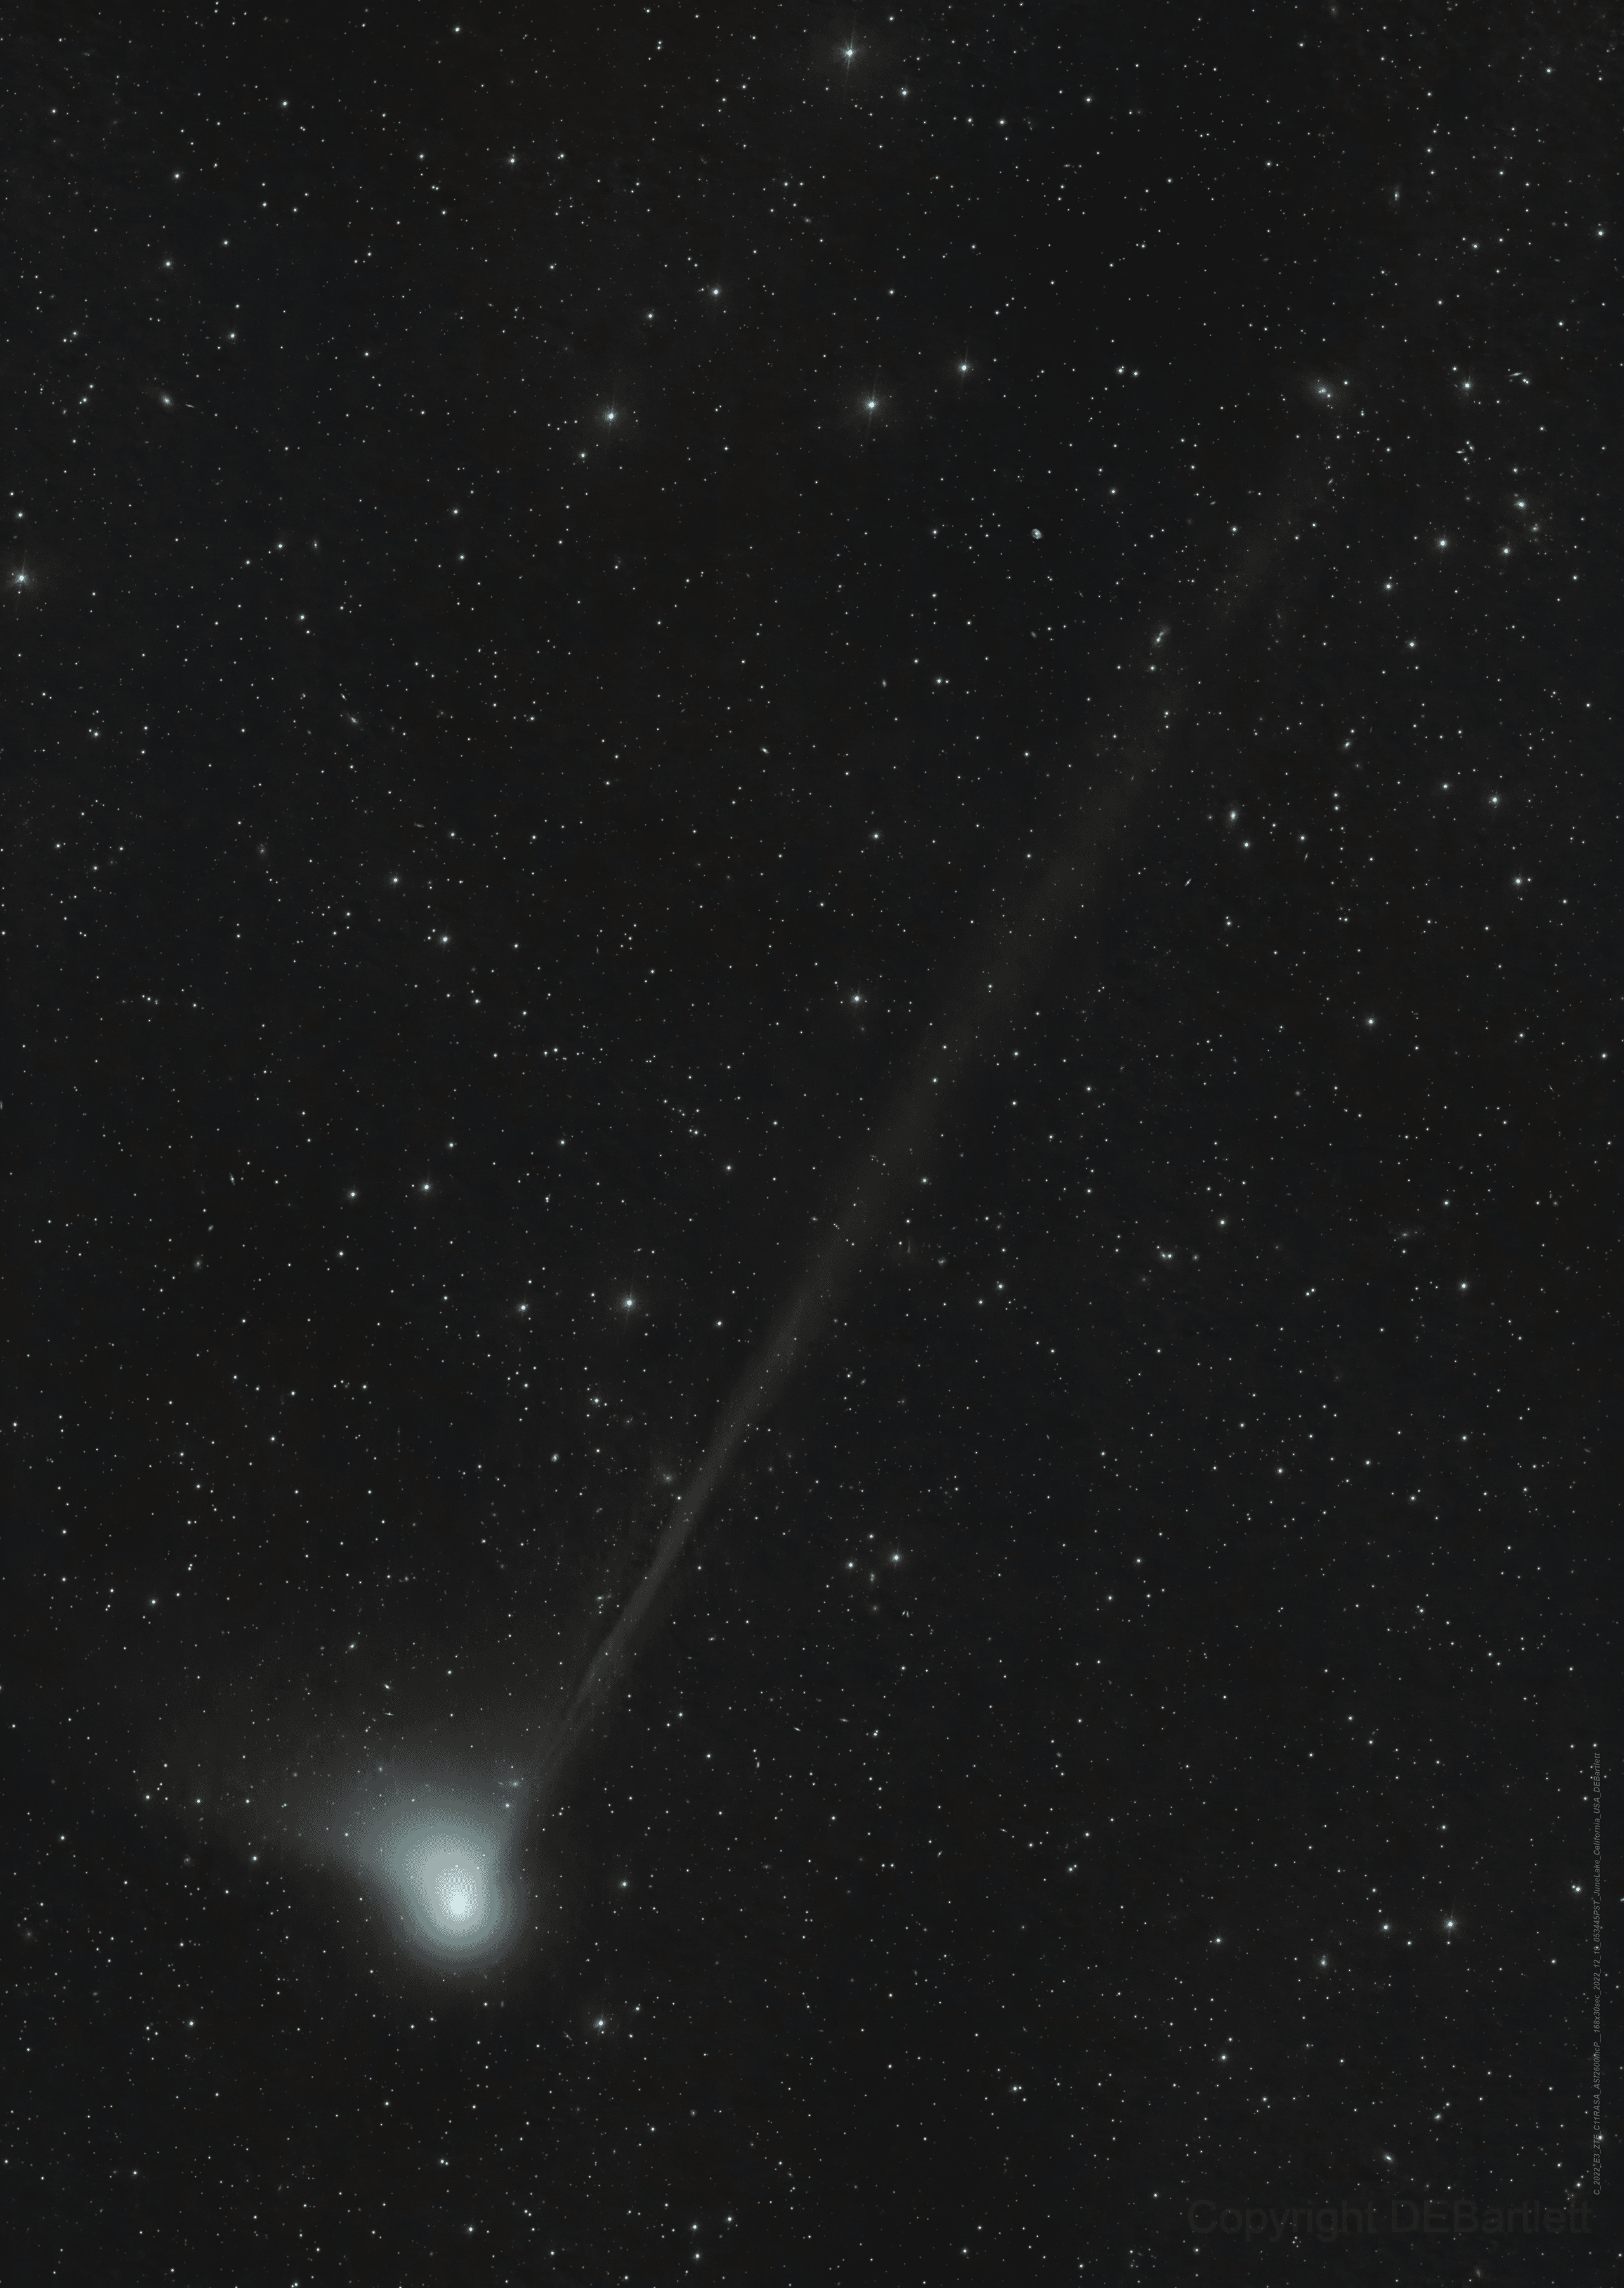 صورة تلسكوبيّة لمُذنَّب "سي/2022 إي3 (ZTF)" تُظهِر ذؤابته المُخضرَّة الأكثر سطوعاً وذيل الغبار الواسع القصير والذيل الأيوني الخافت الطويل.